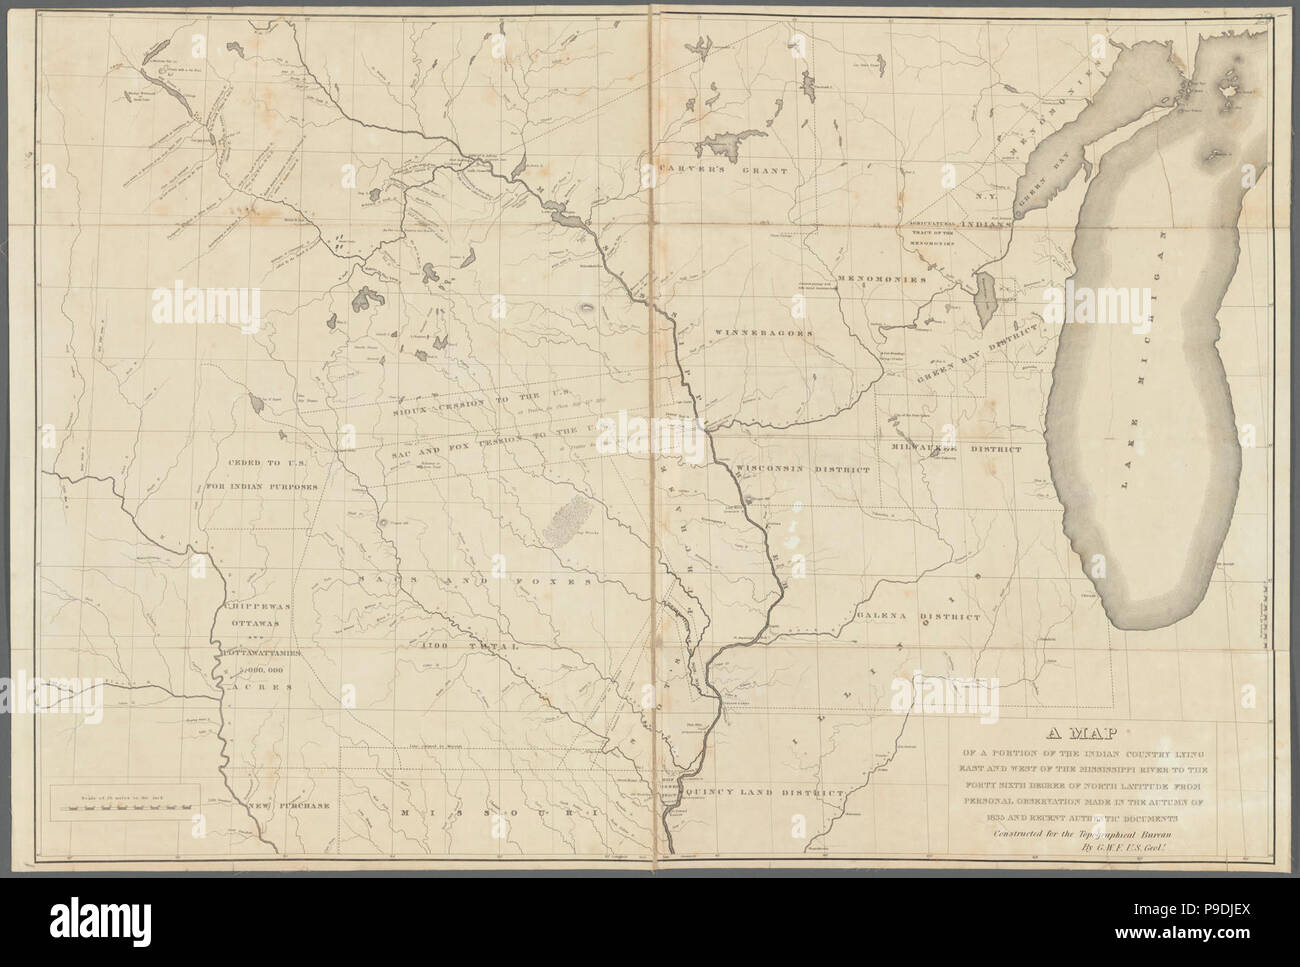 Eine Karte von einem Teil der indischen Land östlich und westlich des Mississippi Flusses zu den 40 6. Grades nördlicher Breite aus persönlicher Beobachtung im Herbst 1835 hergestellt und Stockfoto